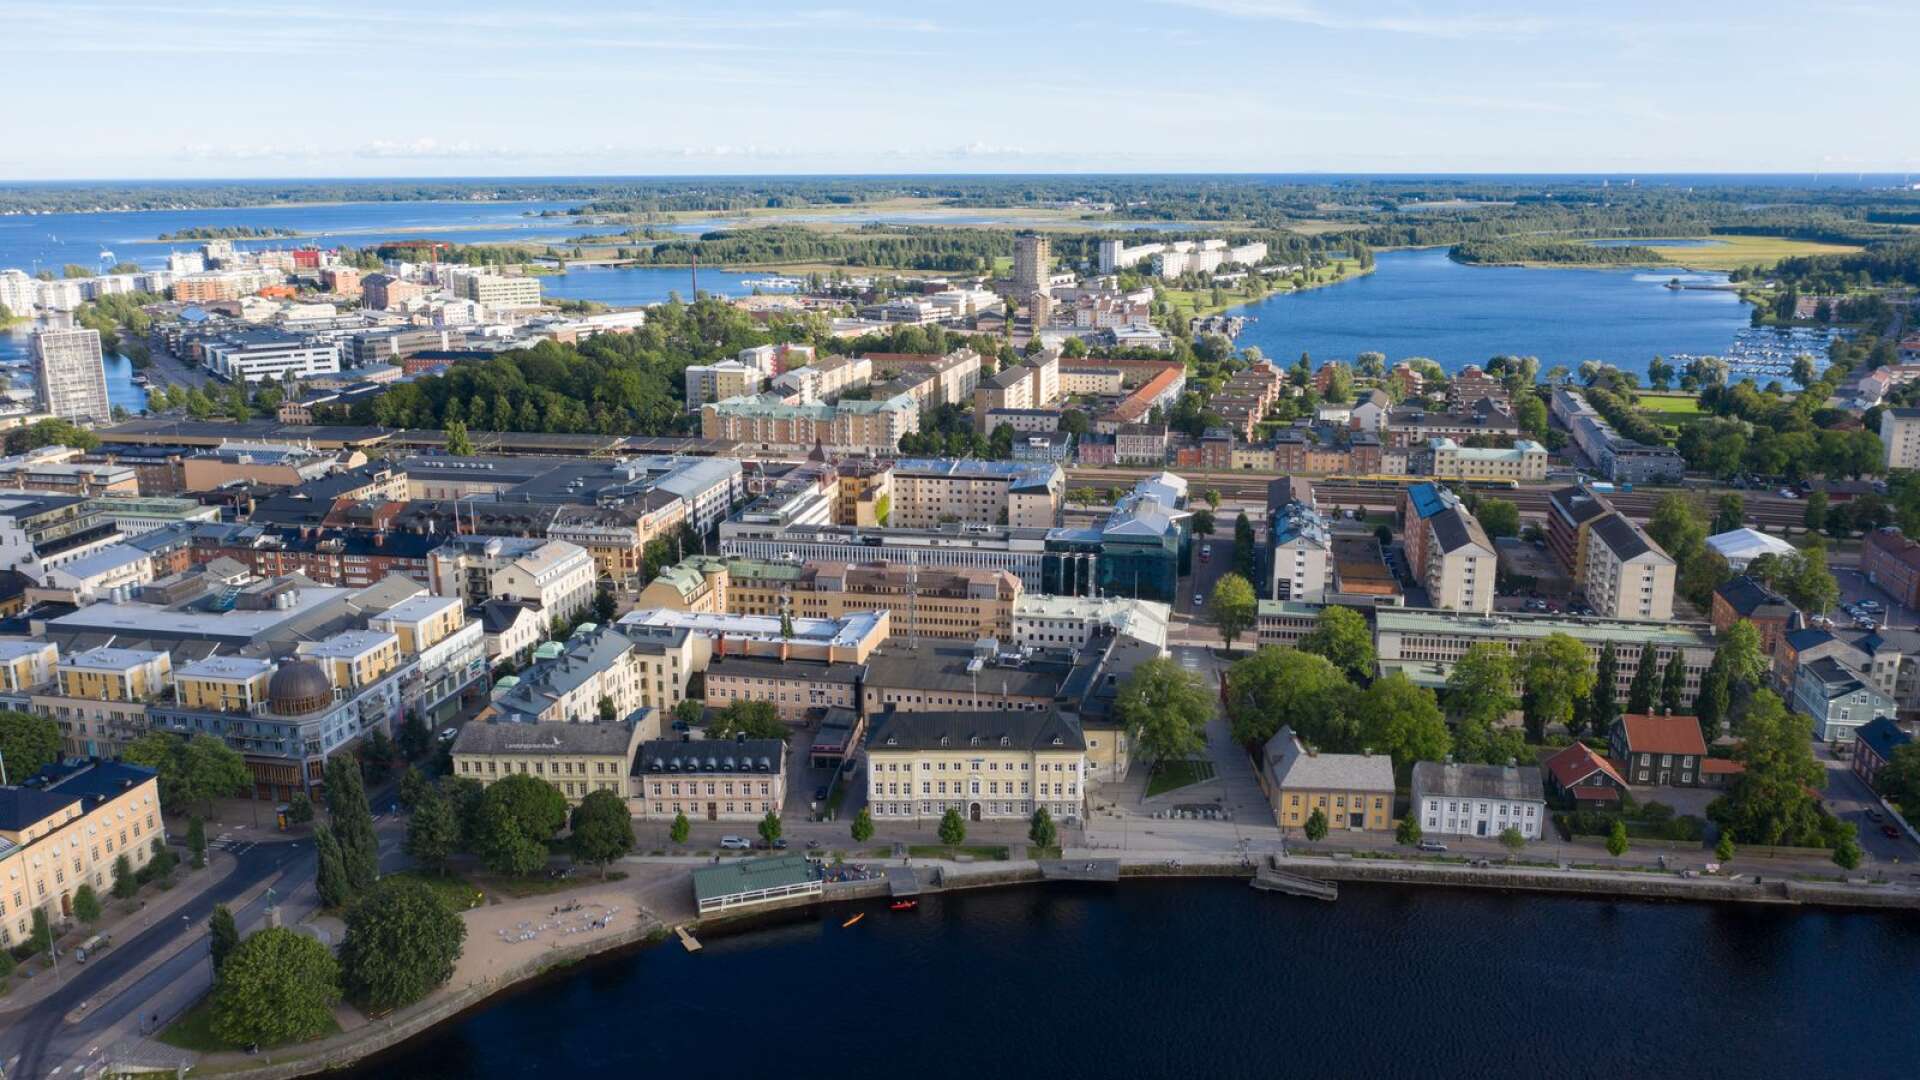 I en förvandlingsprocess med hög och tät bebyggelse i stadskärna kan Karlstad förlora den karaktär som den har med sin hemkänsla som liten stad, skriver Bernadetta Antonina Olsson.